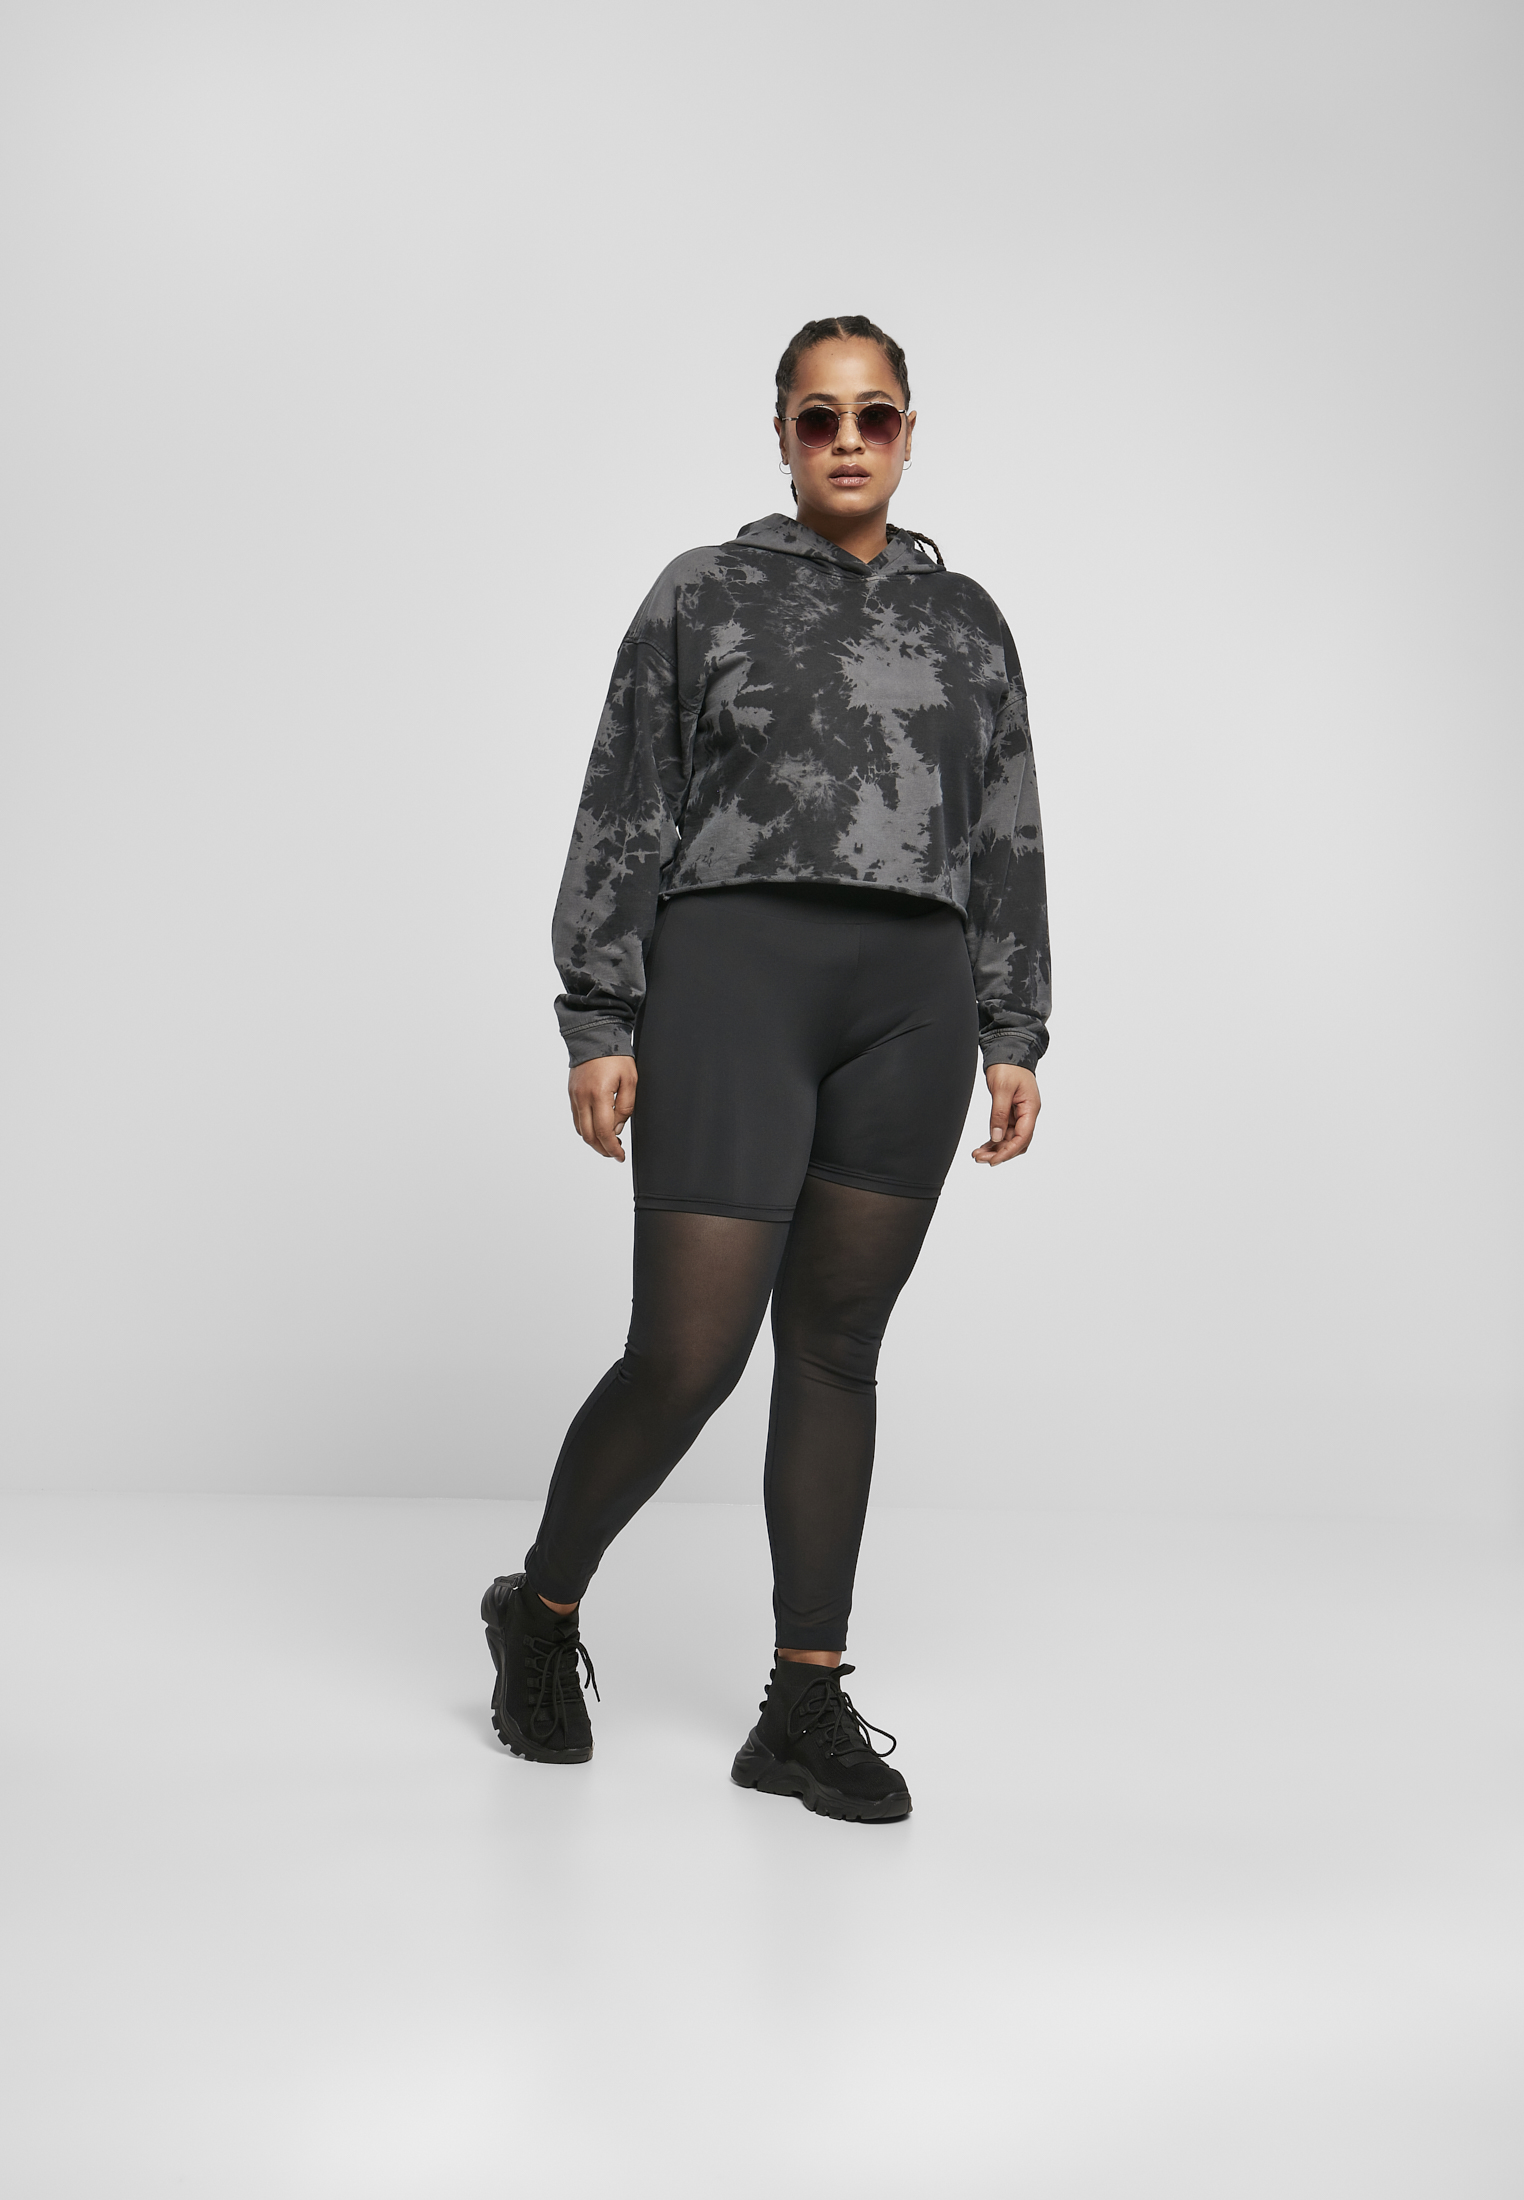 Urban Classics Ladies Shiny Tech Mesh Leggings black -  -  Online Hip Hop Fashion Store